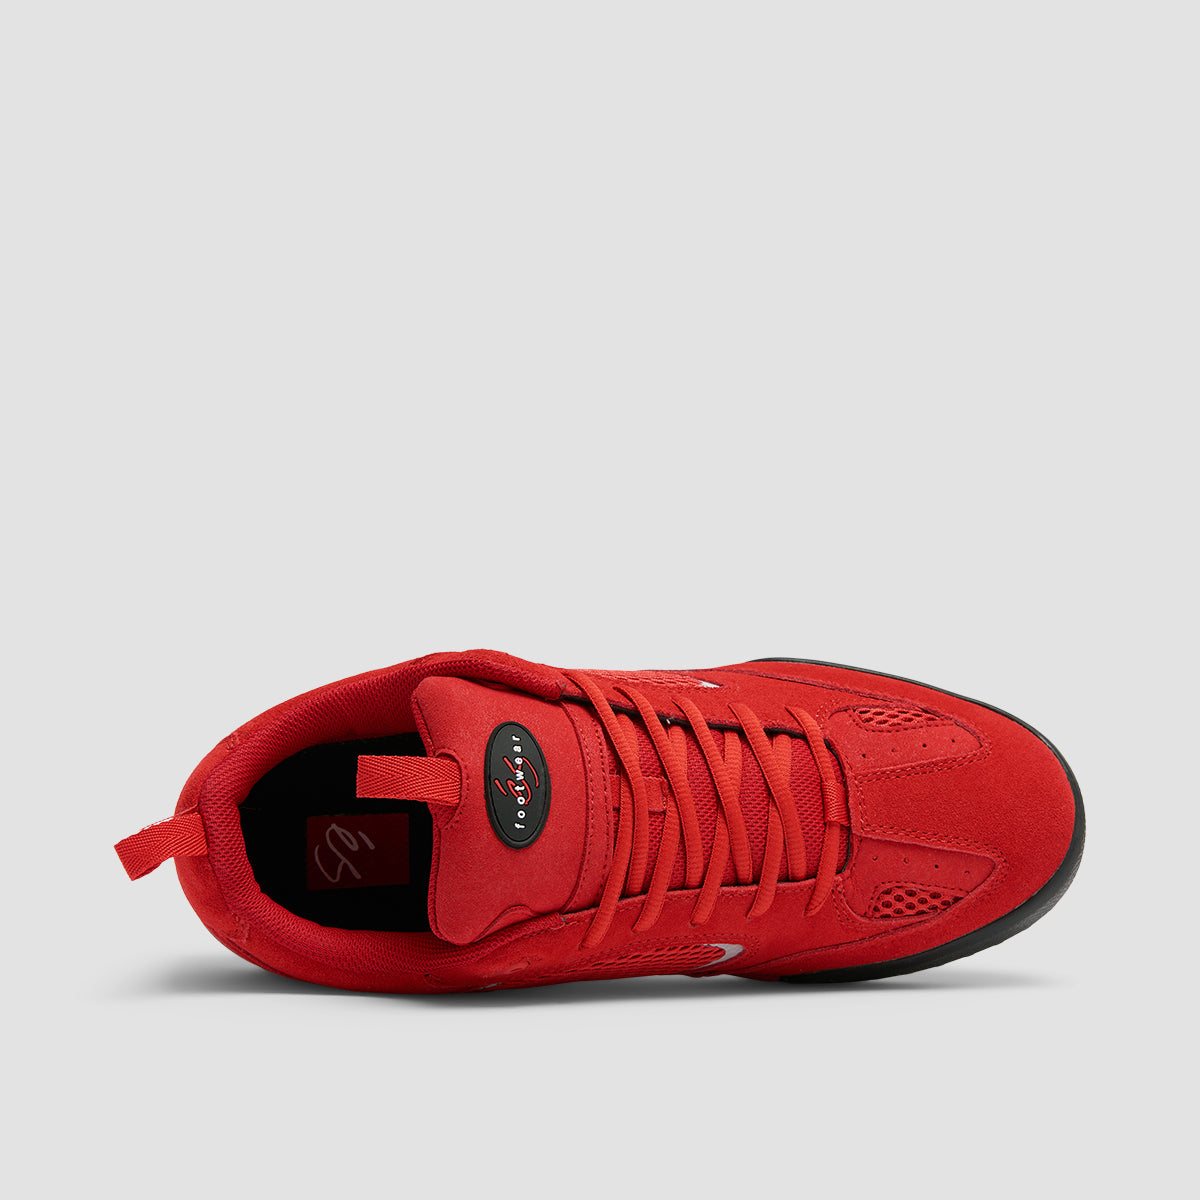 eS Quattro Shoes - Red/Black